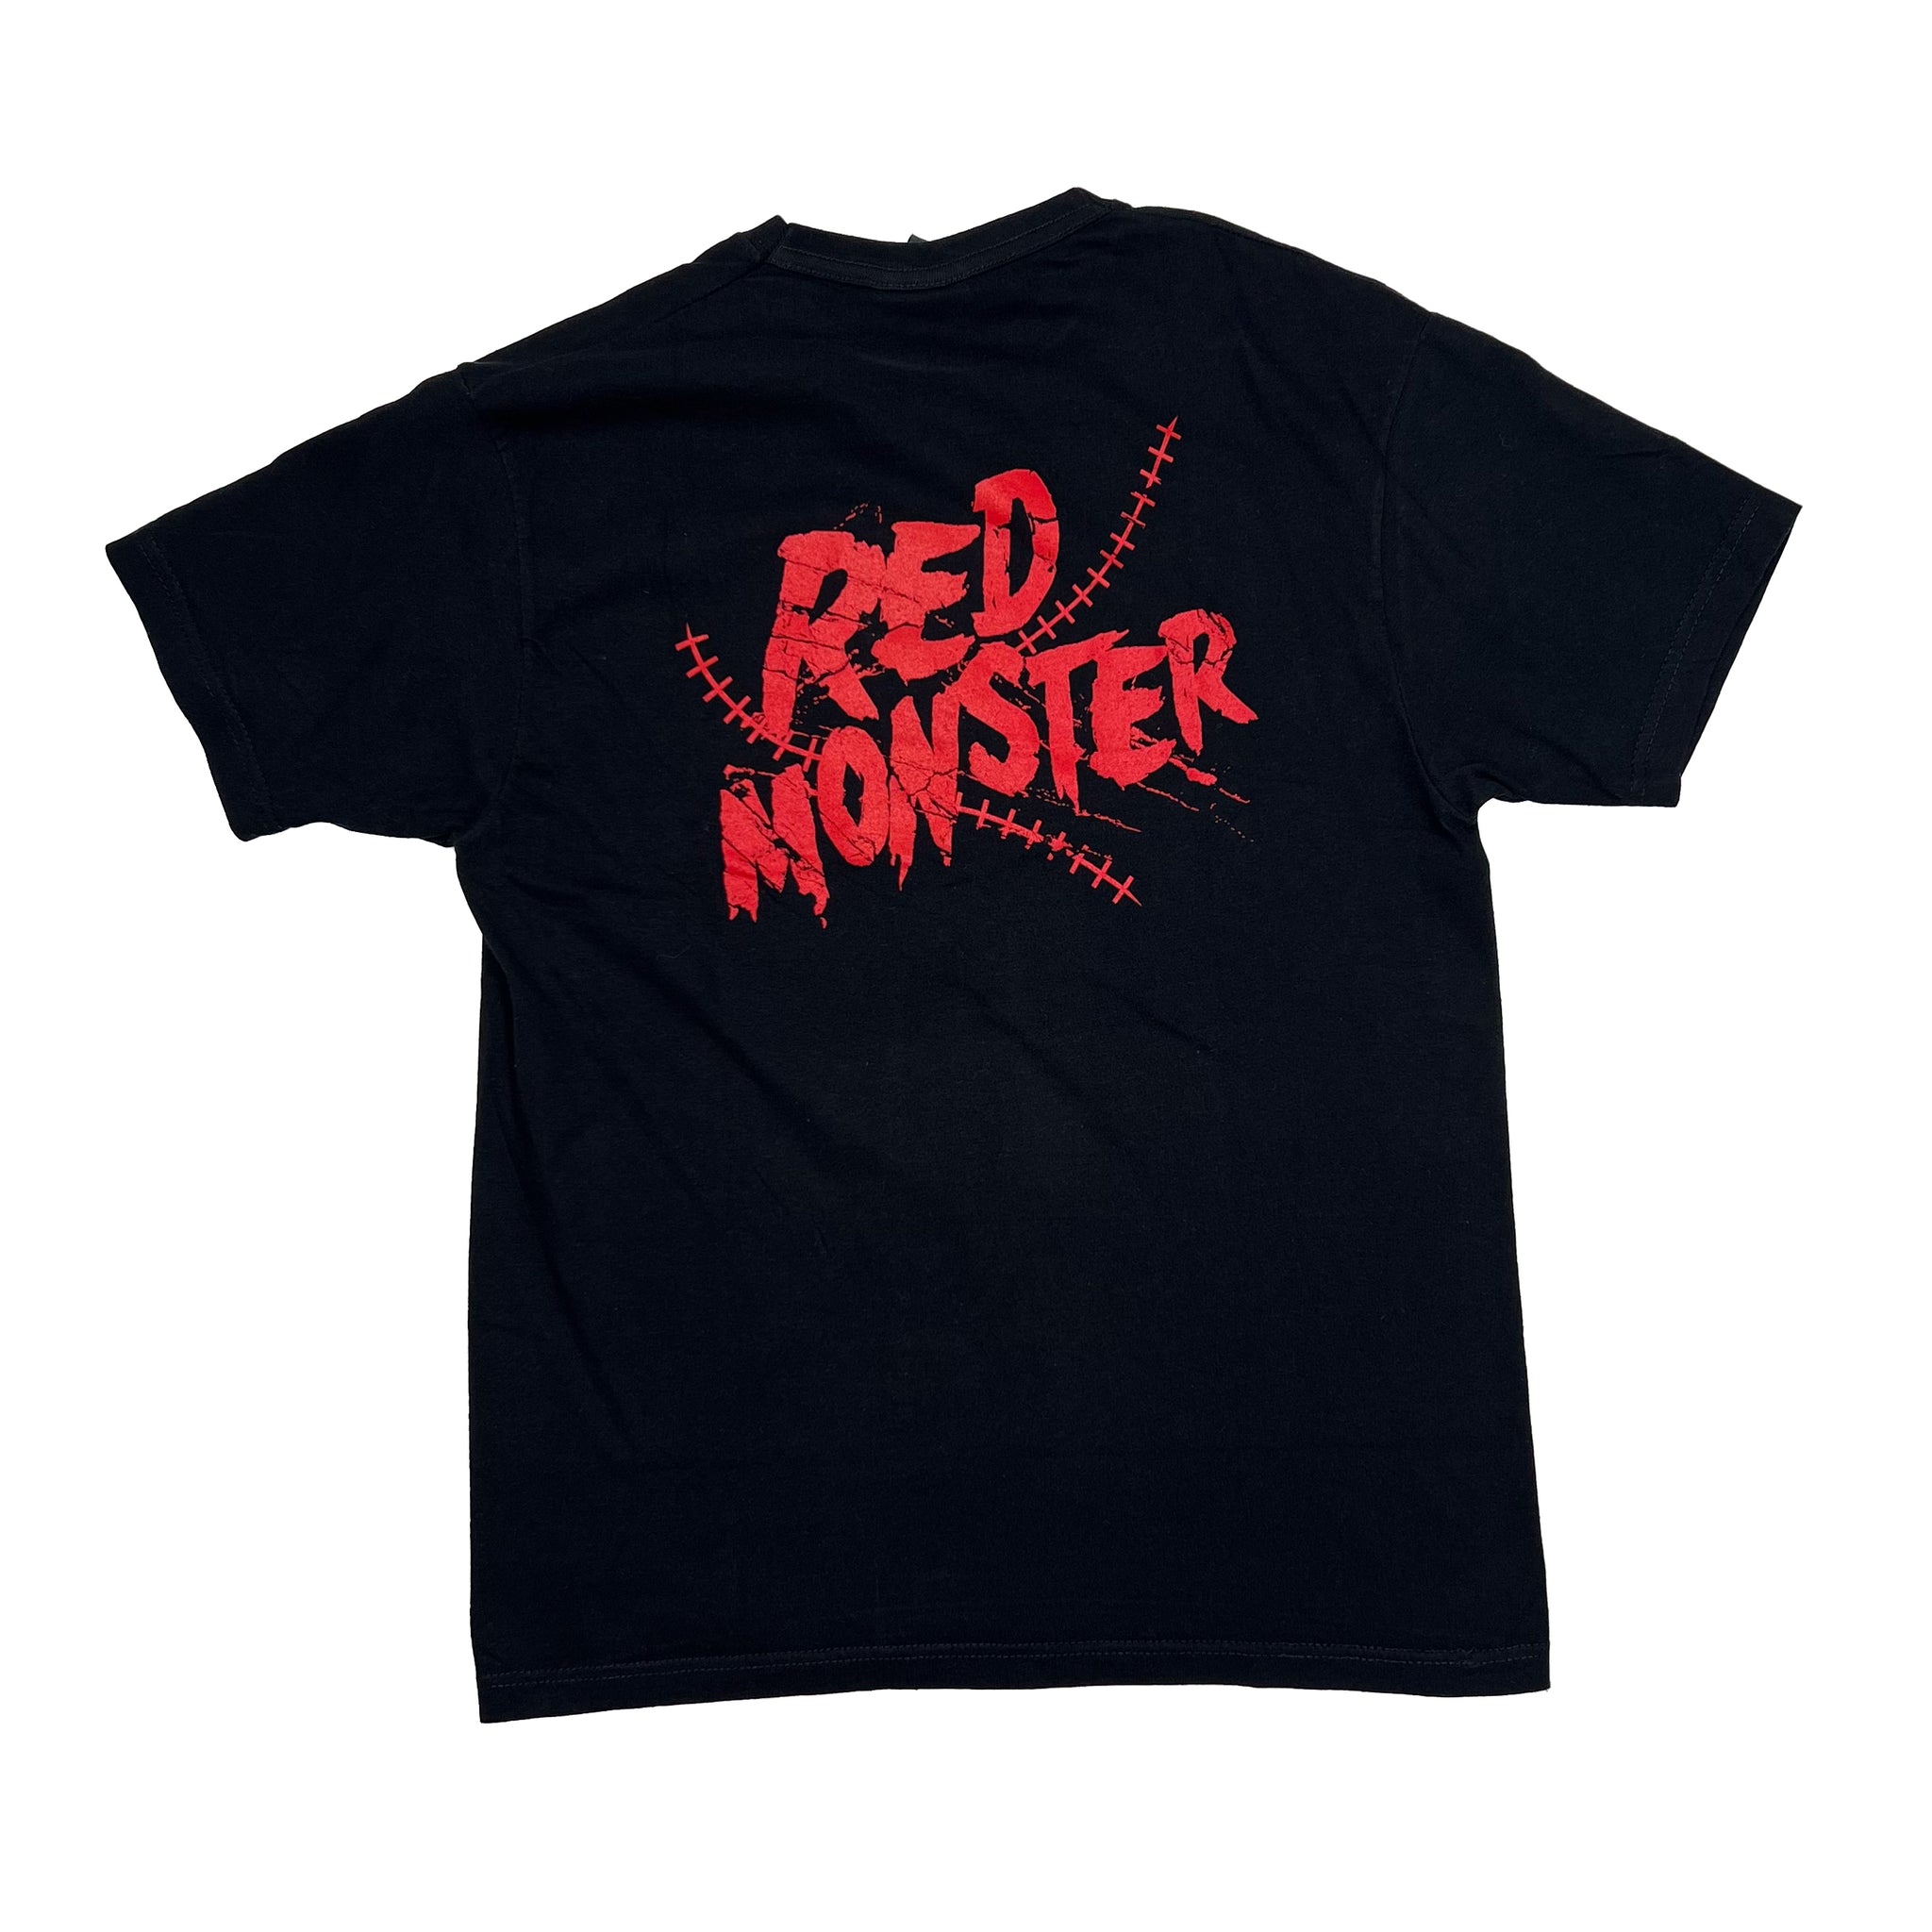 Kane Big Red Monster Pullover Hoodie Sweatshirt, Pro Wrestling